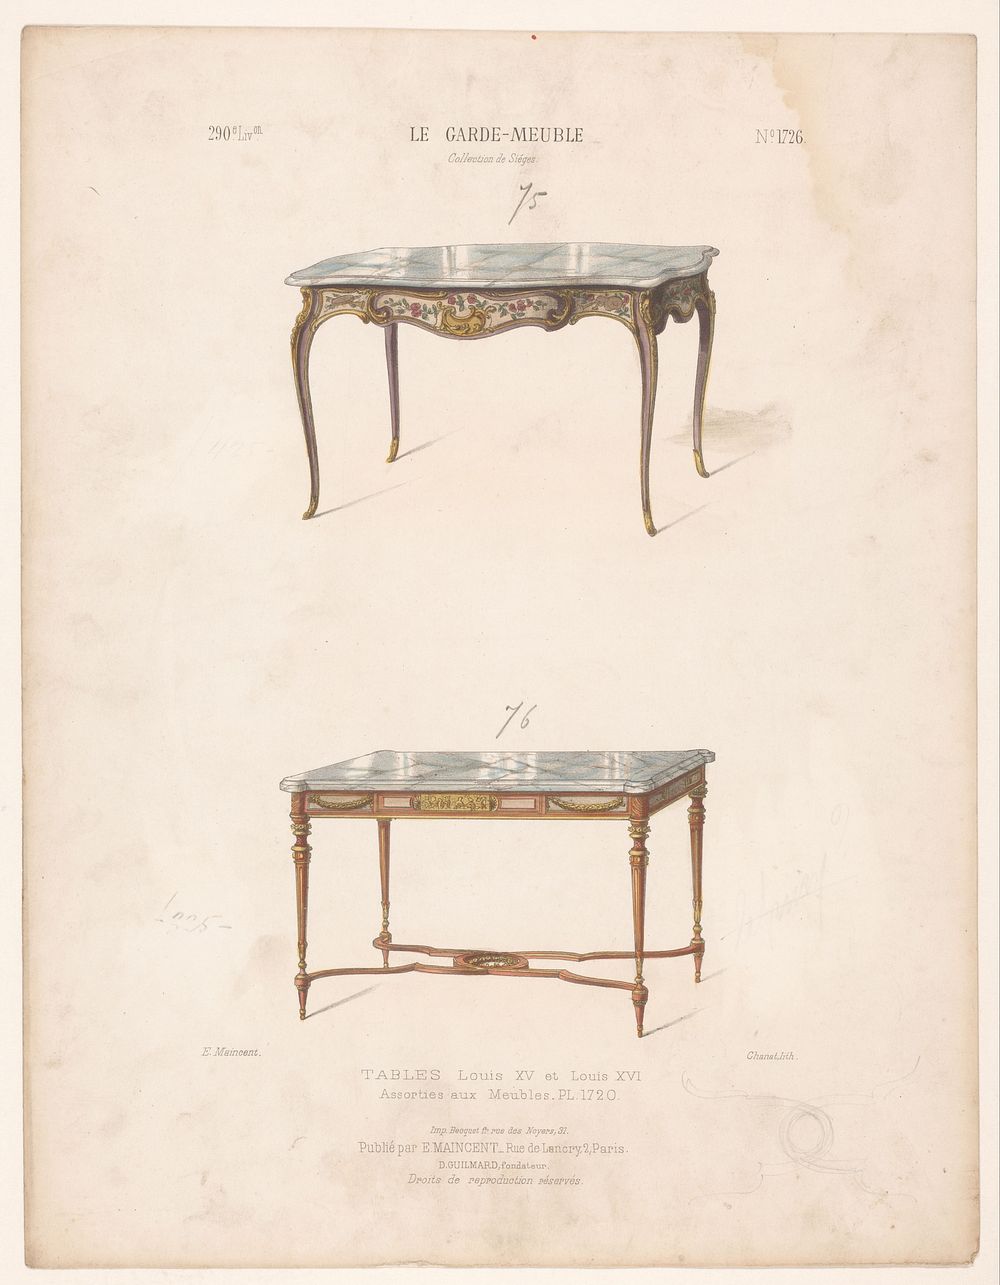 Twee tafels (1885 - 1895) by Chanat, Becquet frères, Eugène Maincent and Désiré Guilmard